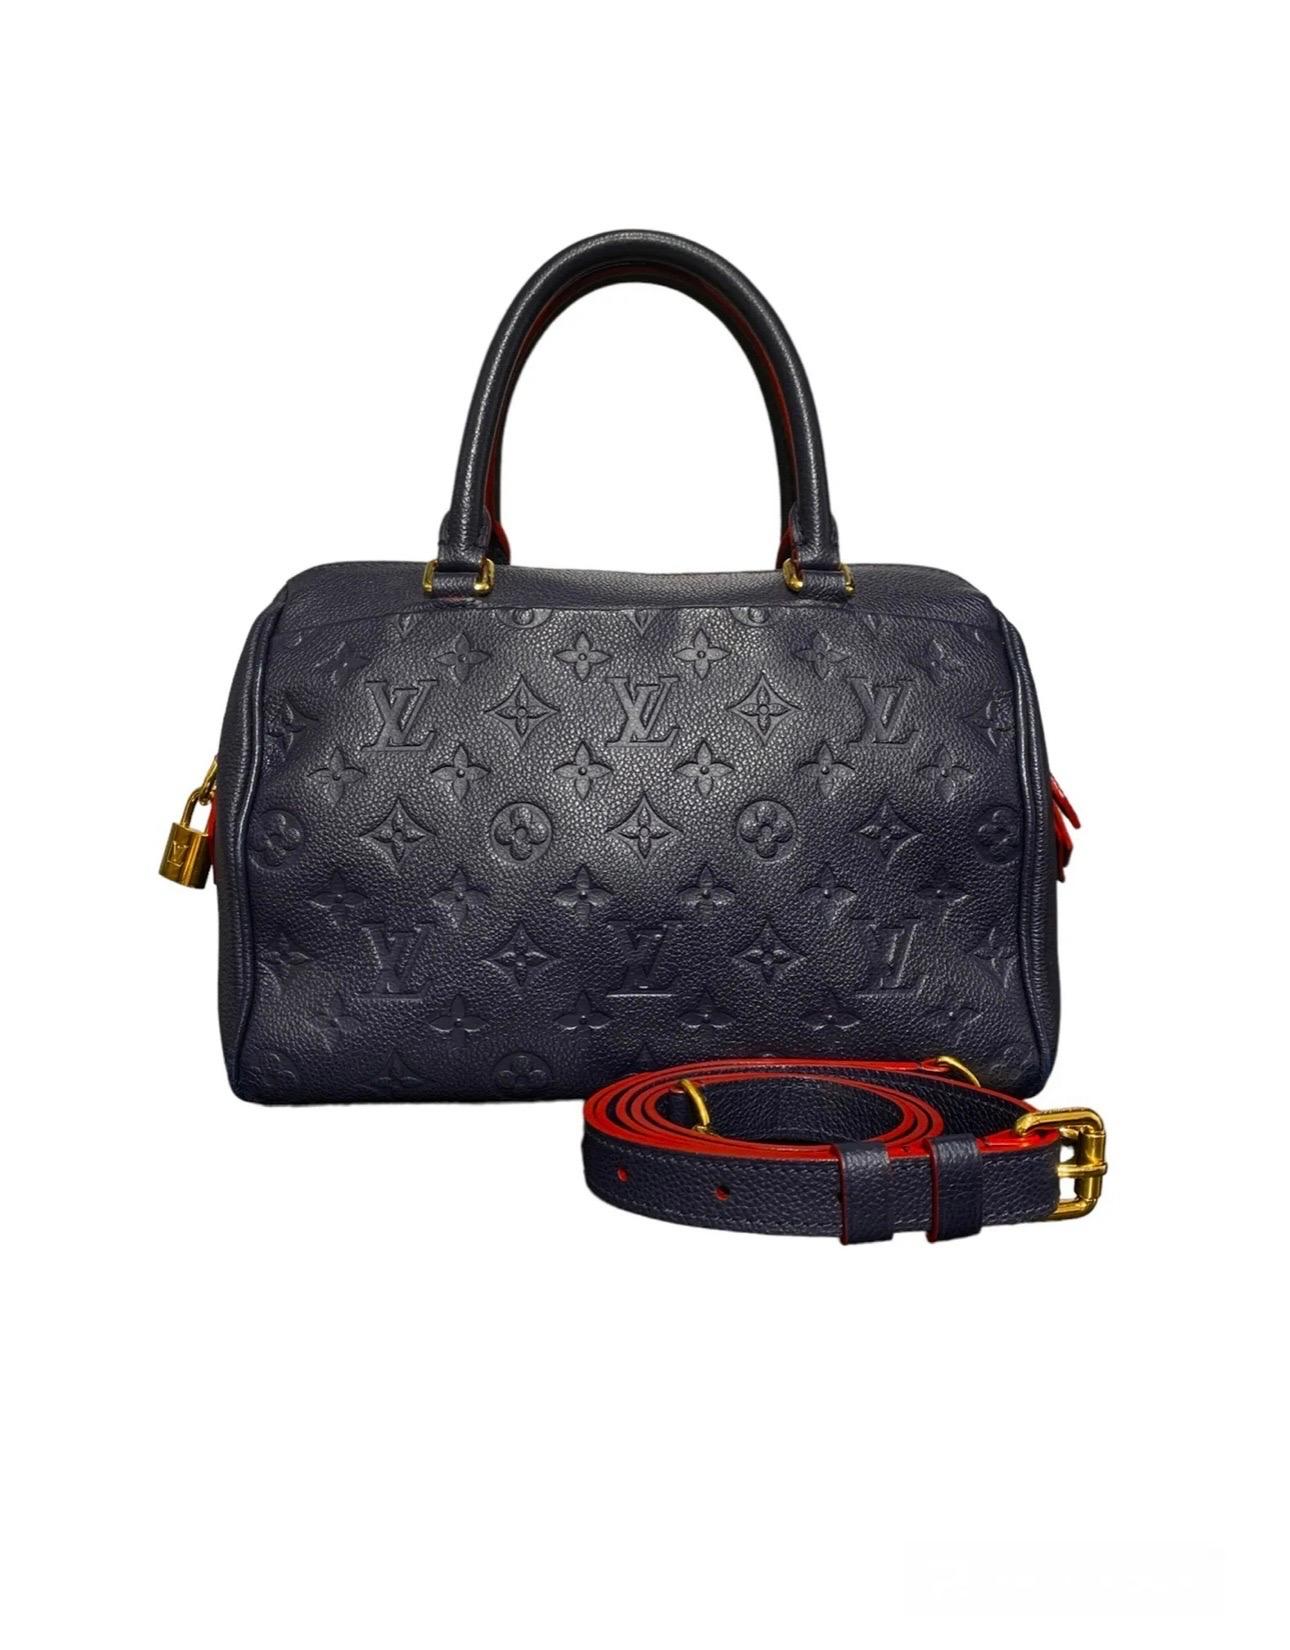 Louis Vuitton Speedy 25 Bandoulière Empreinte Blue Leather Top Handle Bag 2